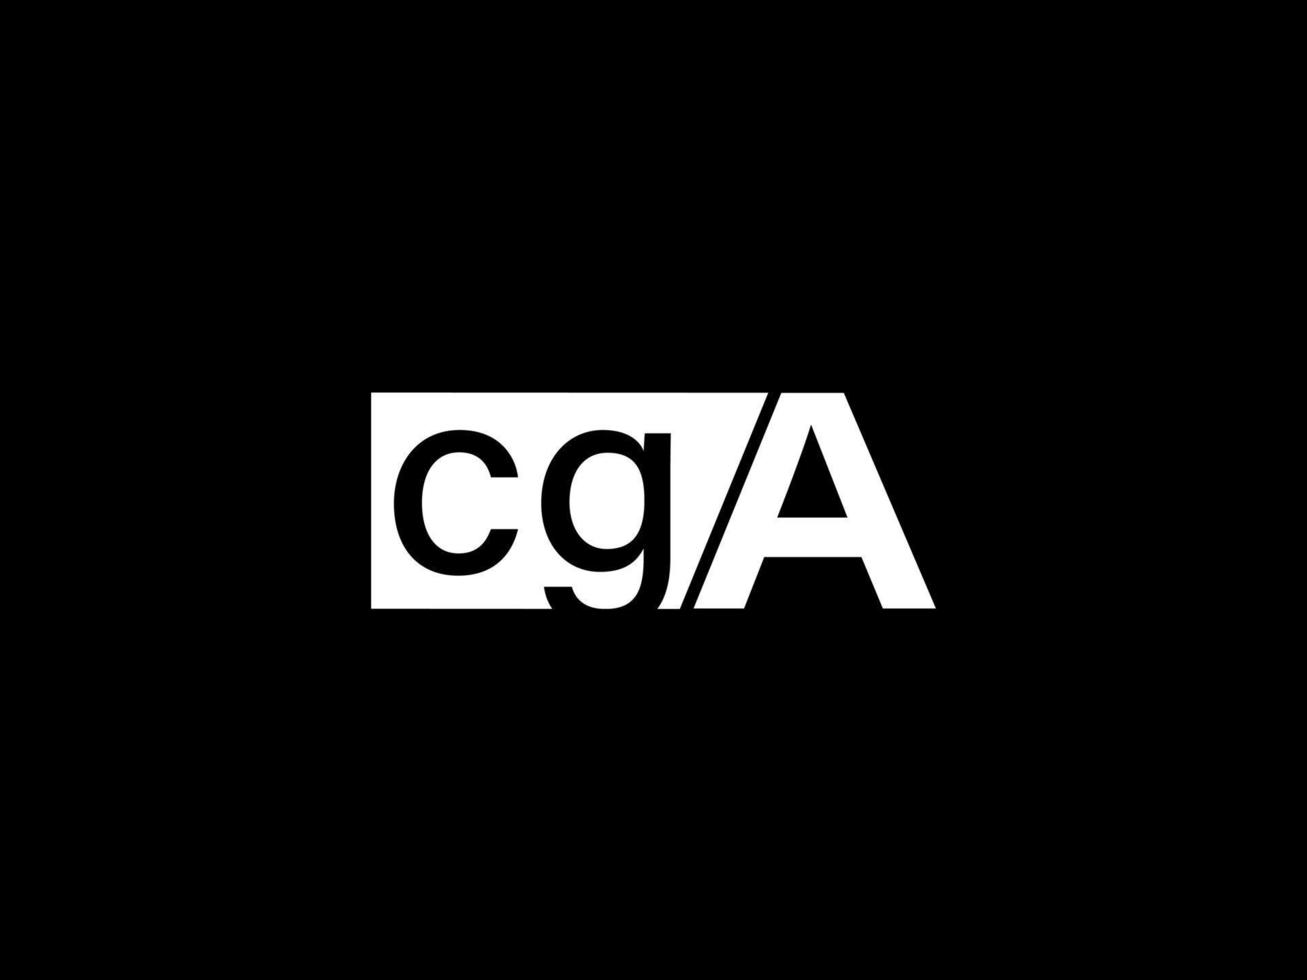 cga-Logo und Grafikdesign Vektorgrafiken, Symbole isoliert auf schwarzem Hintergrund vektor